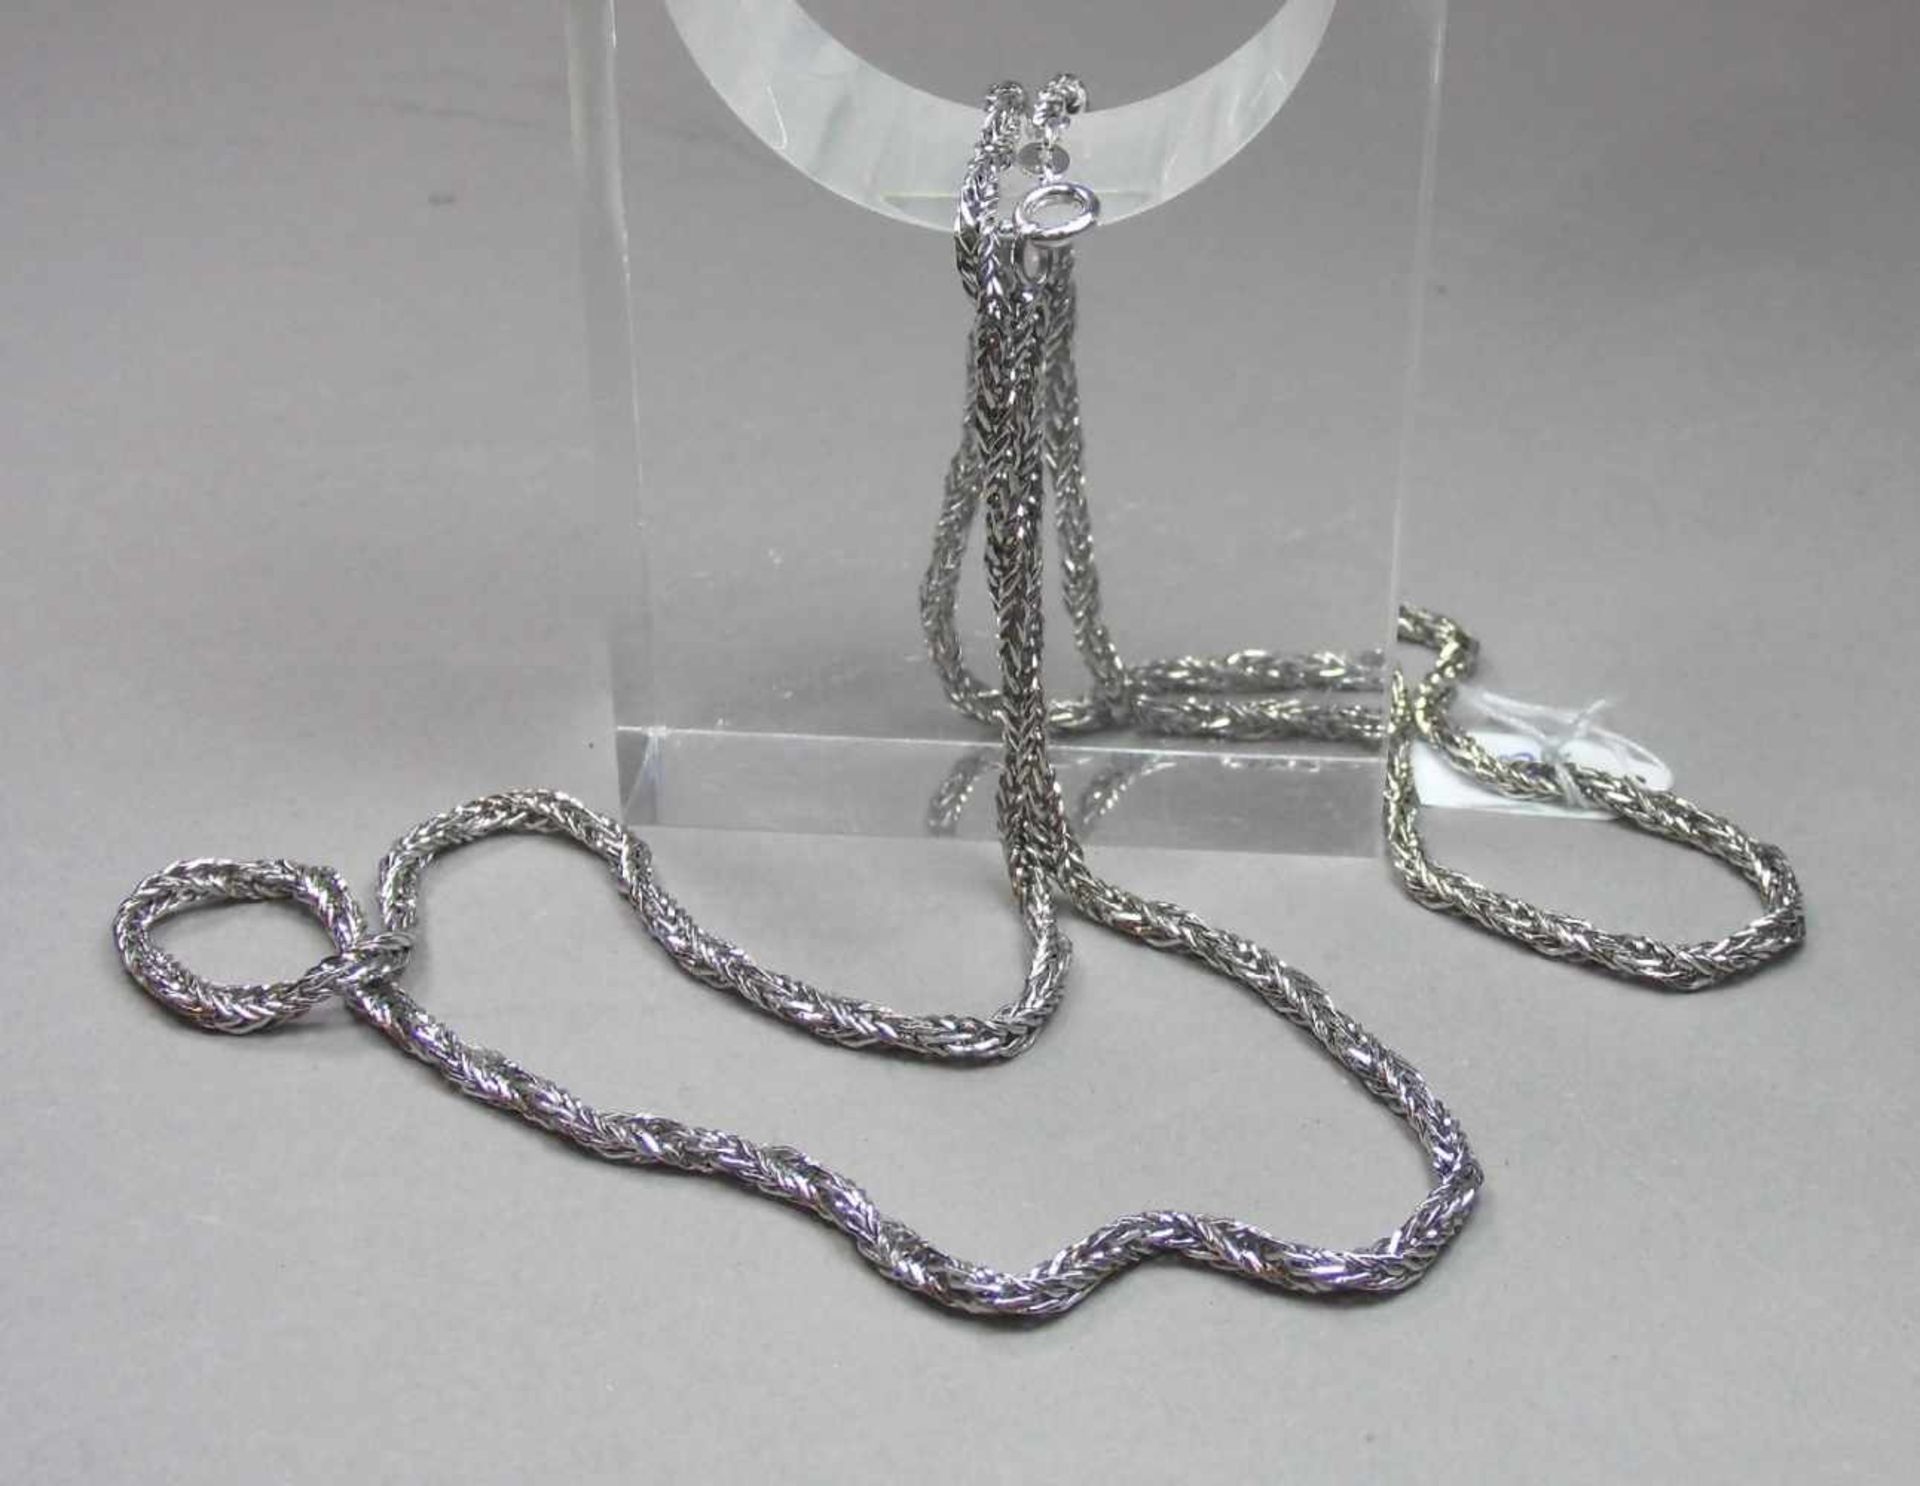 KETTE / necklace, 835er Silber (24,3 g), gepunzt mit Feingehaltsangabe und "SP". In der Art einer